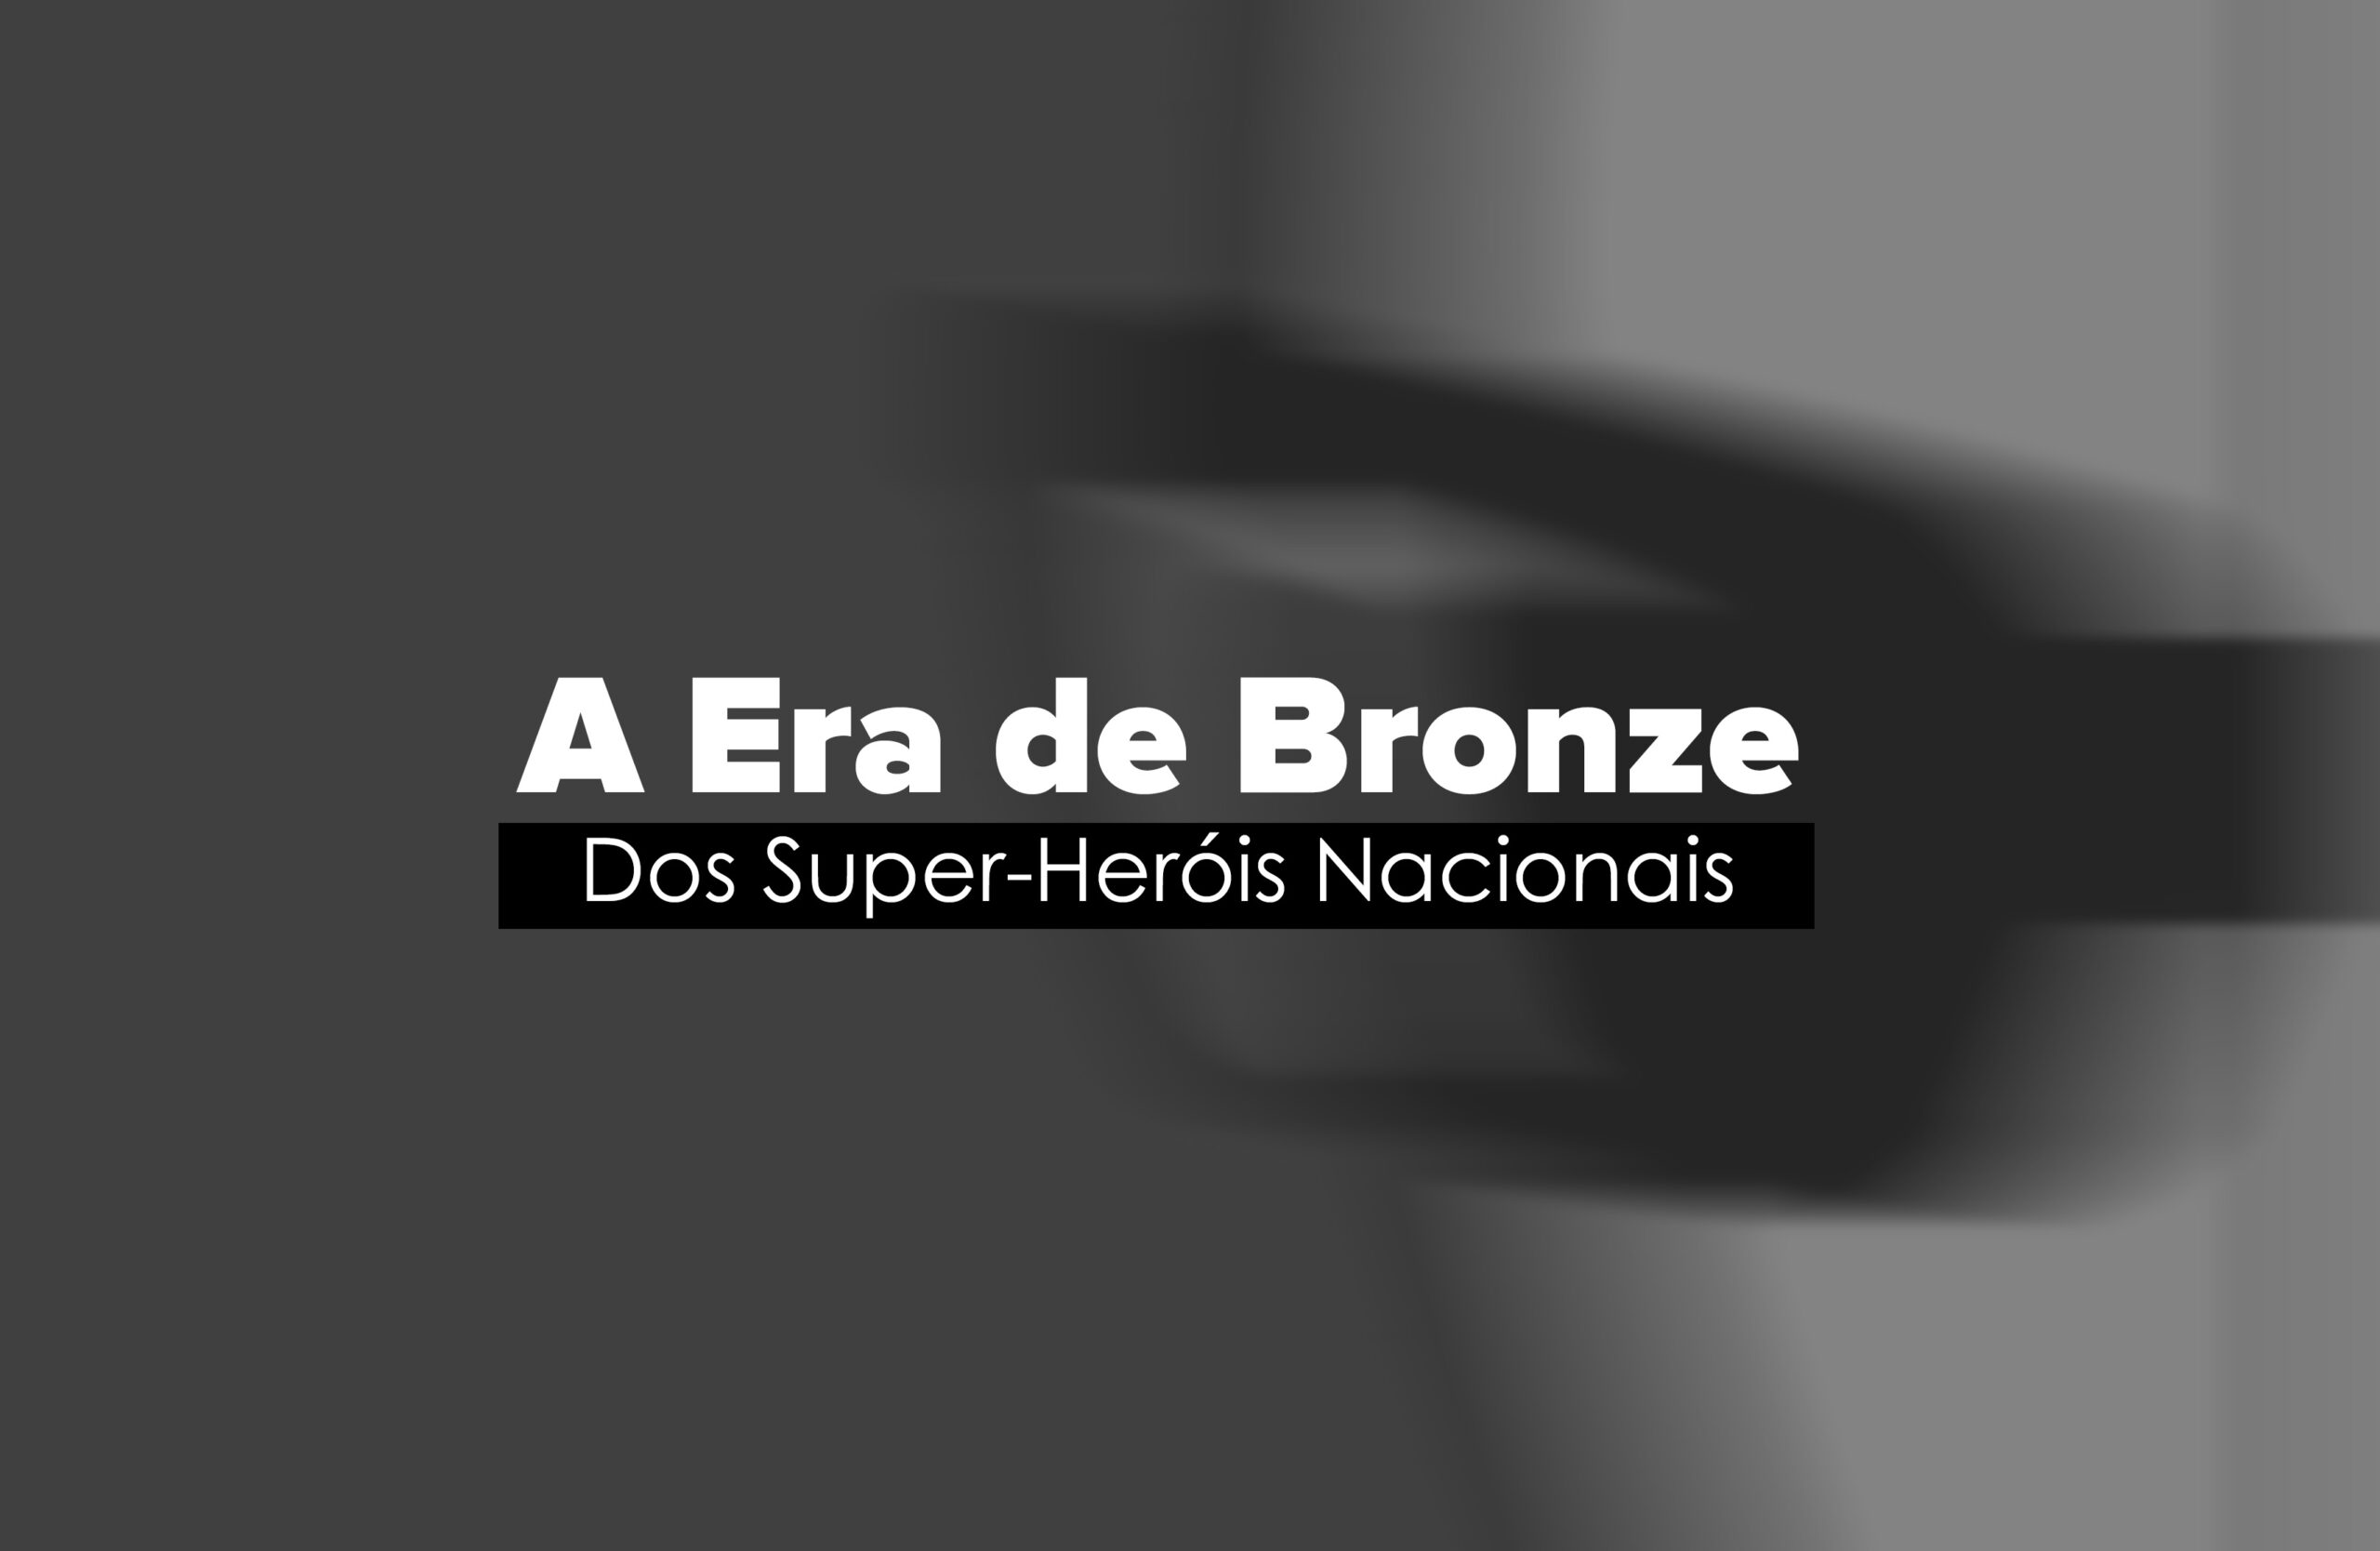 A Era de Bronze do Super-Heróis Nacionais 28